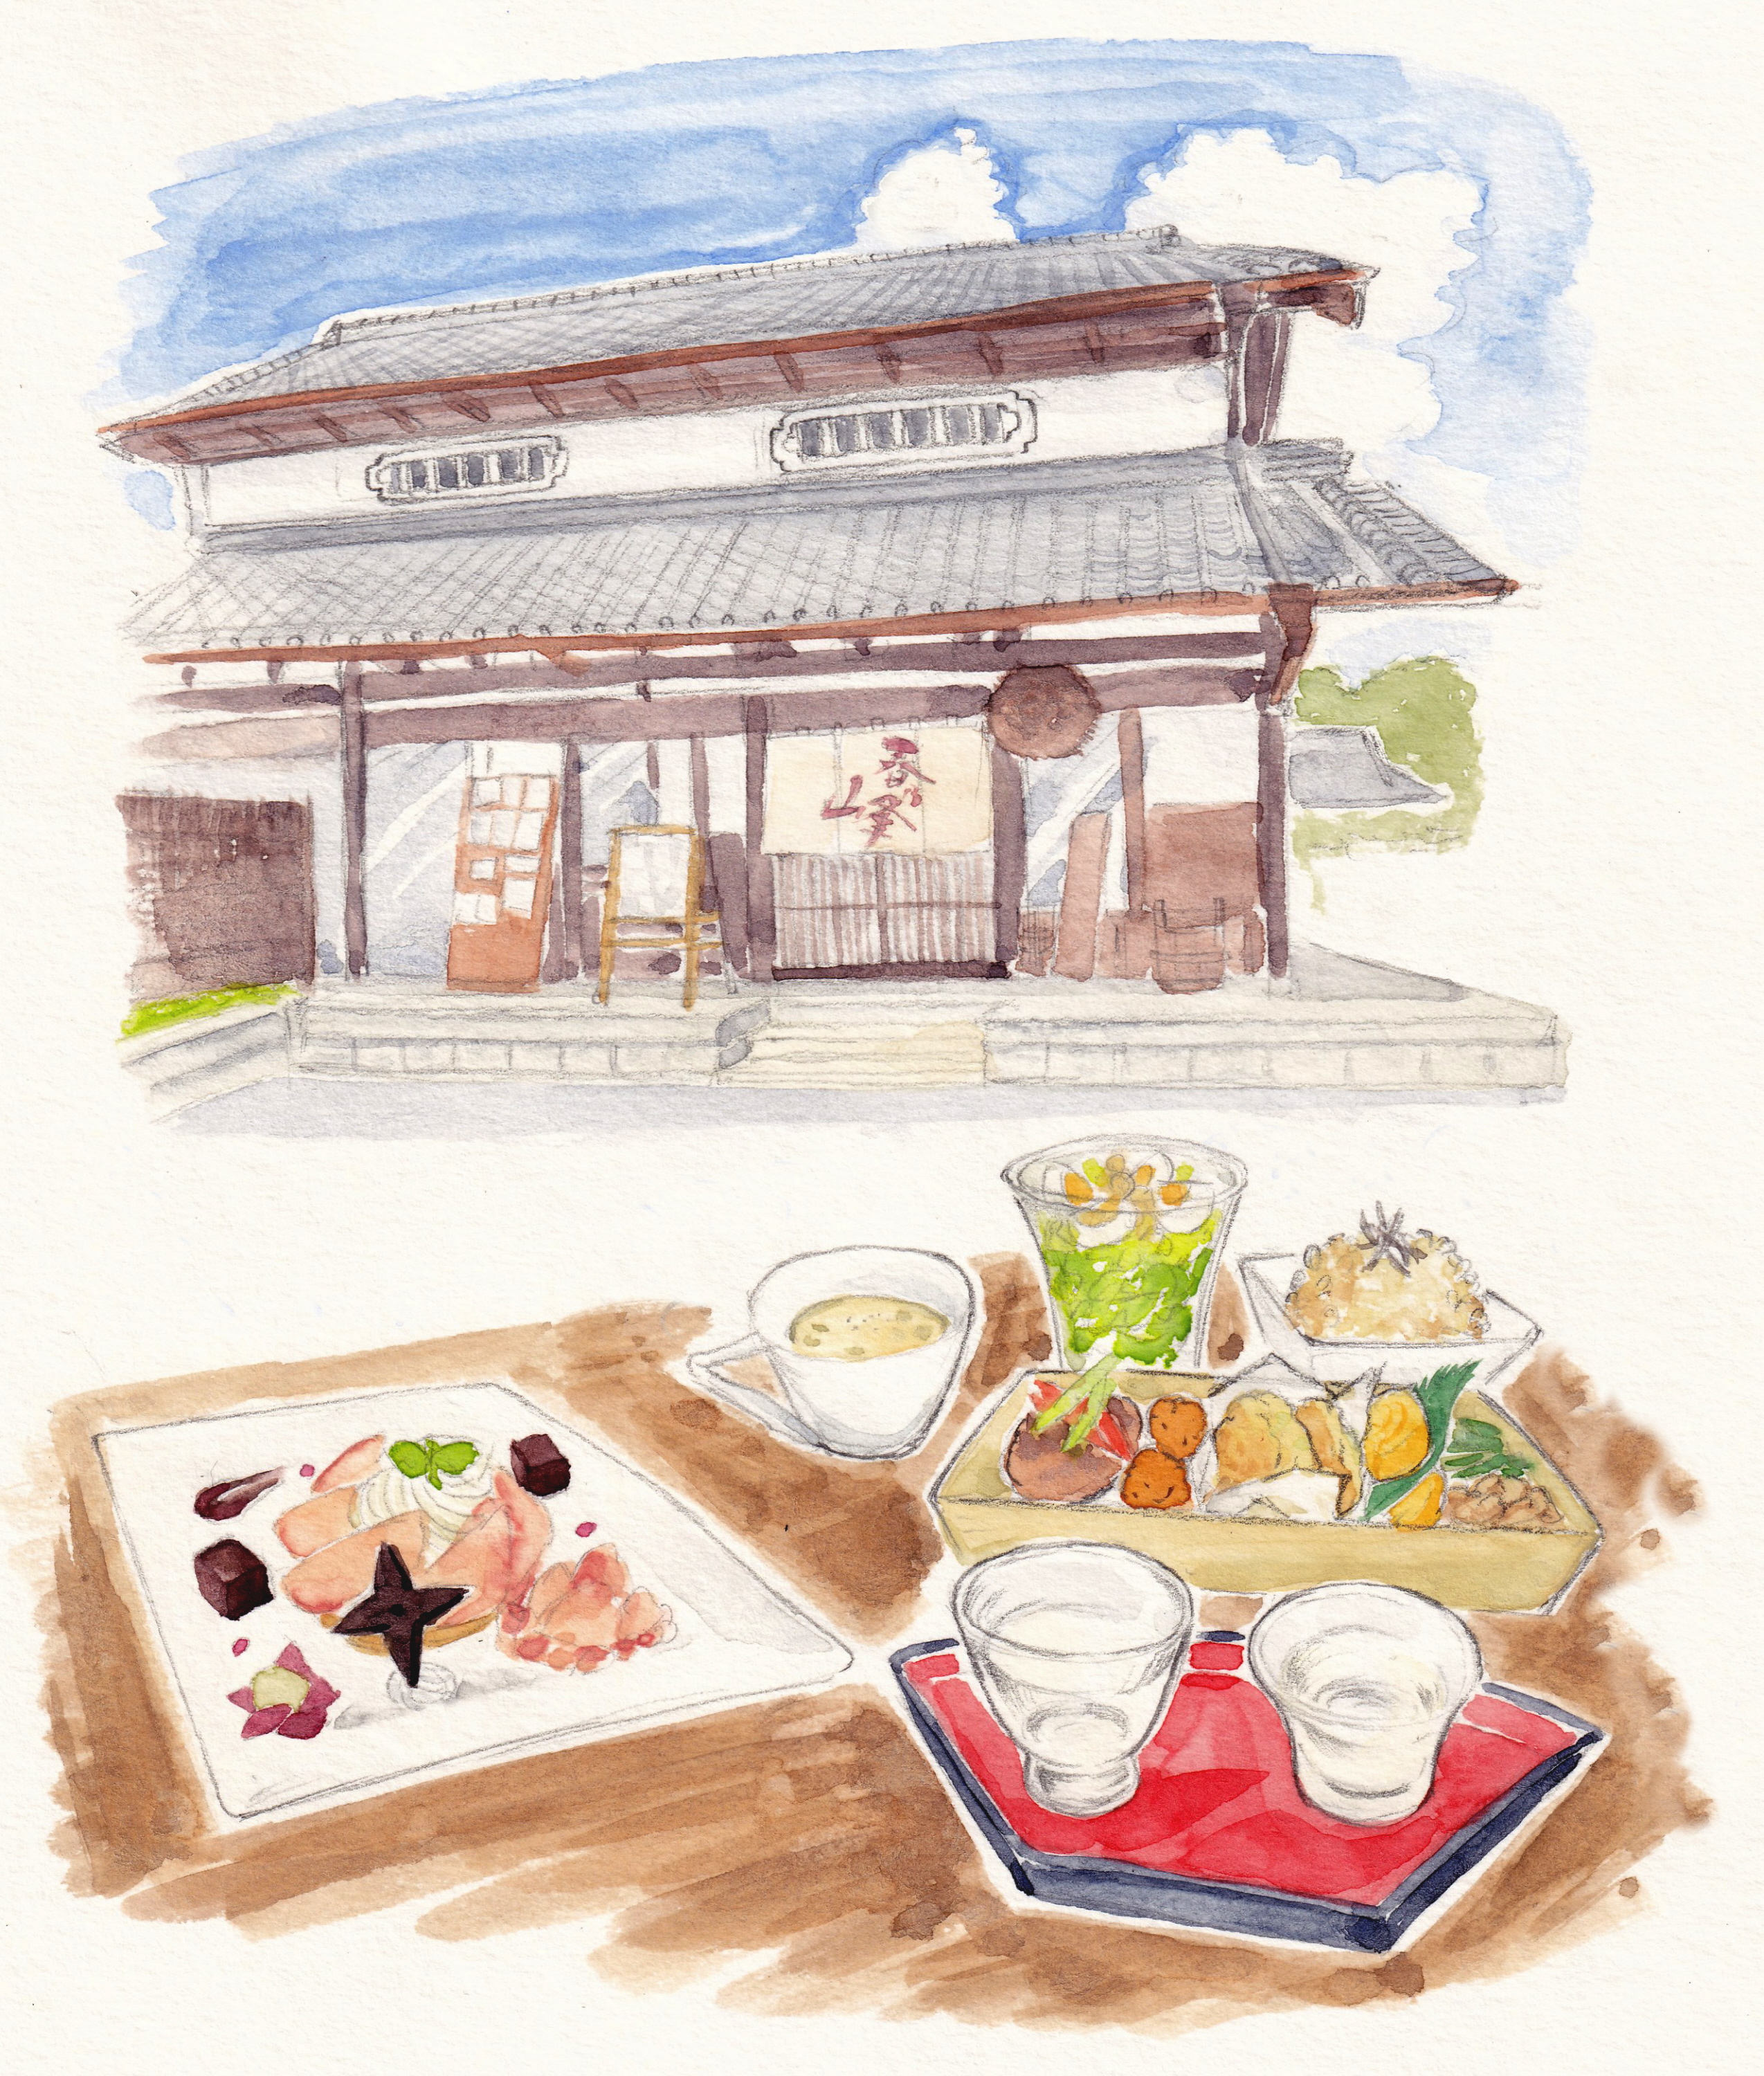 ほろよい余話】甲賀の酒蔵カフェで味わう残暑の癒やし - 産経